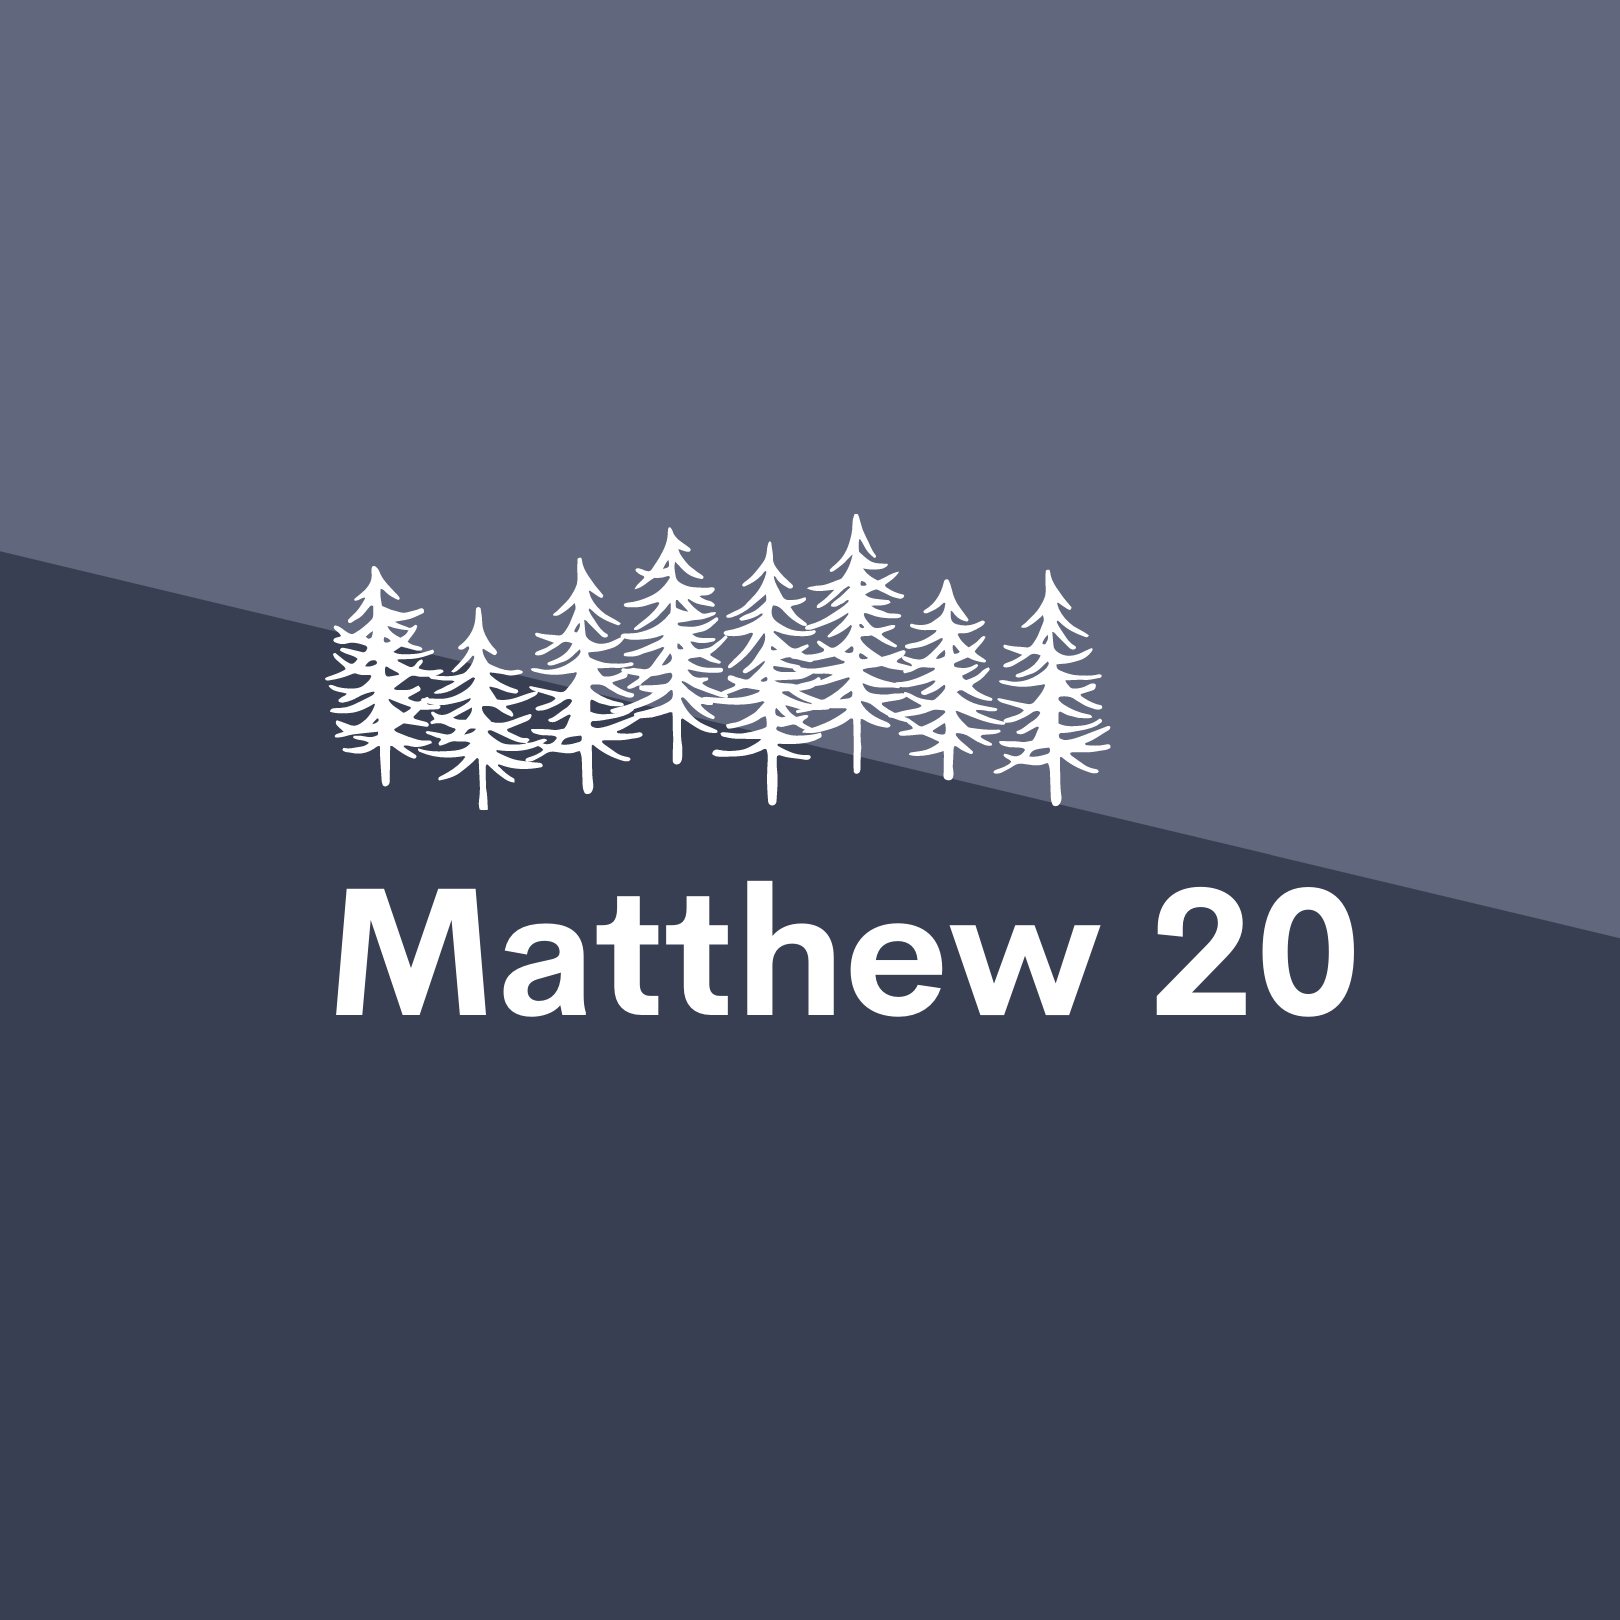 Jan 29: Matthew 20